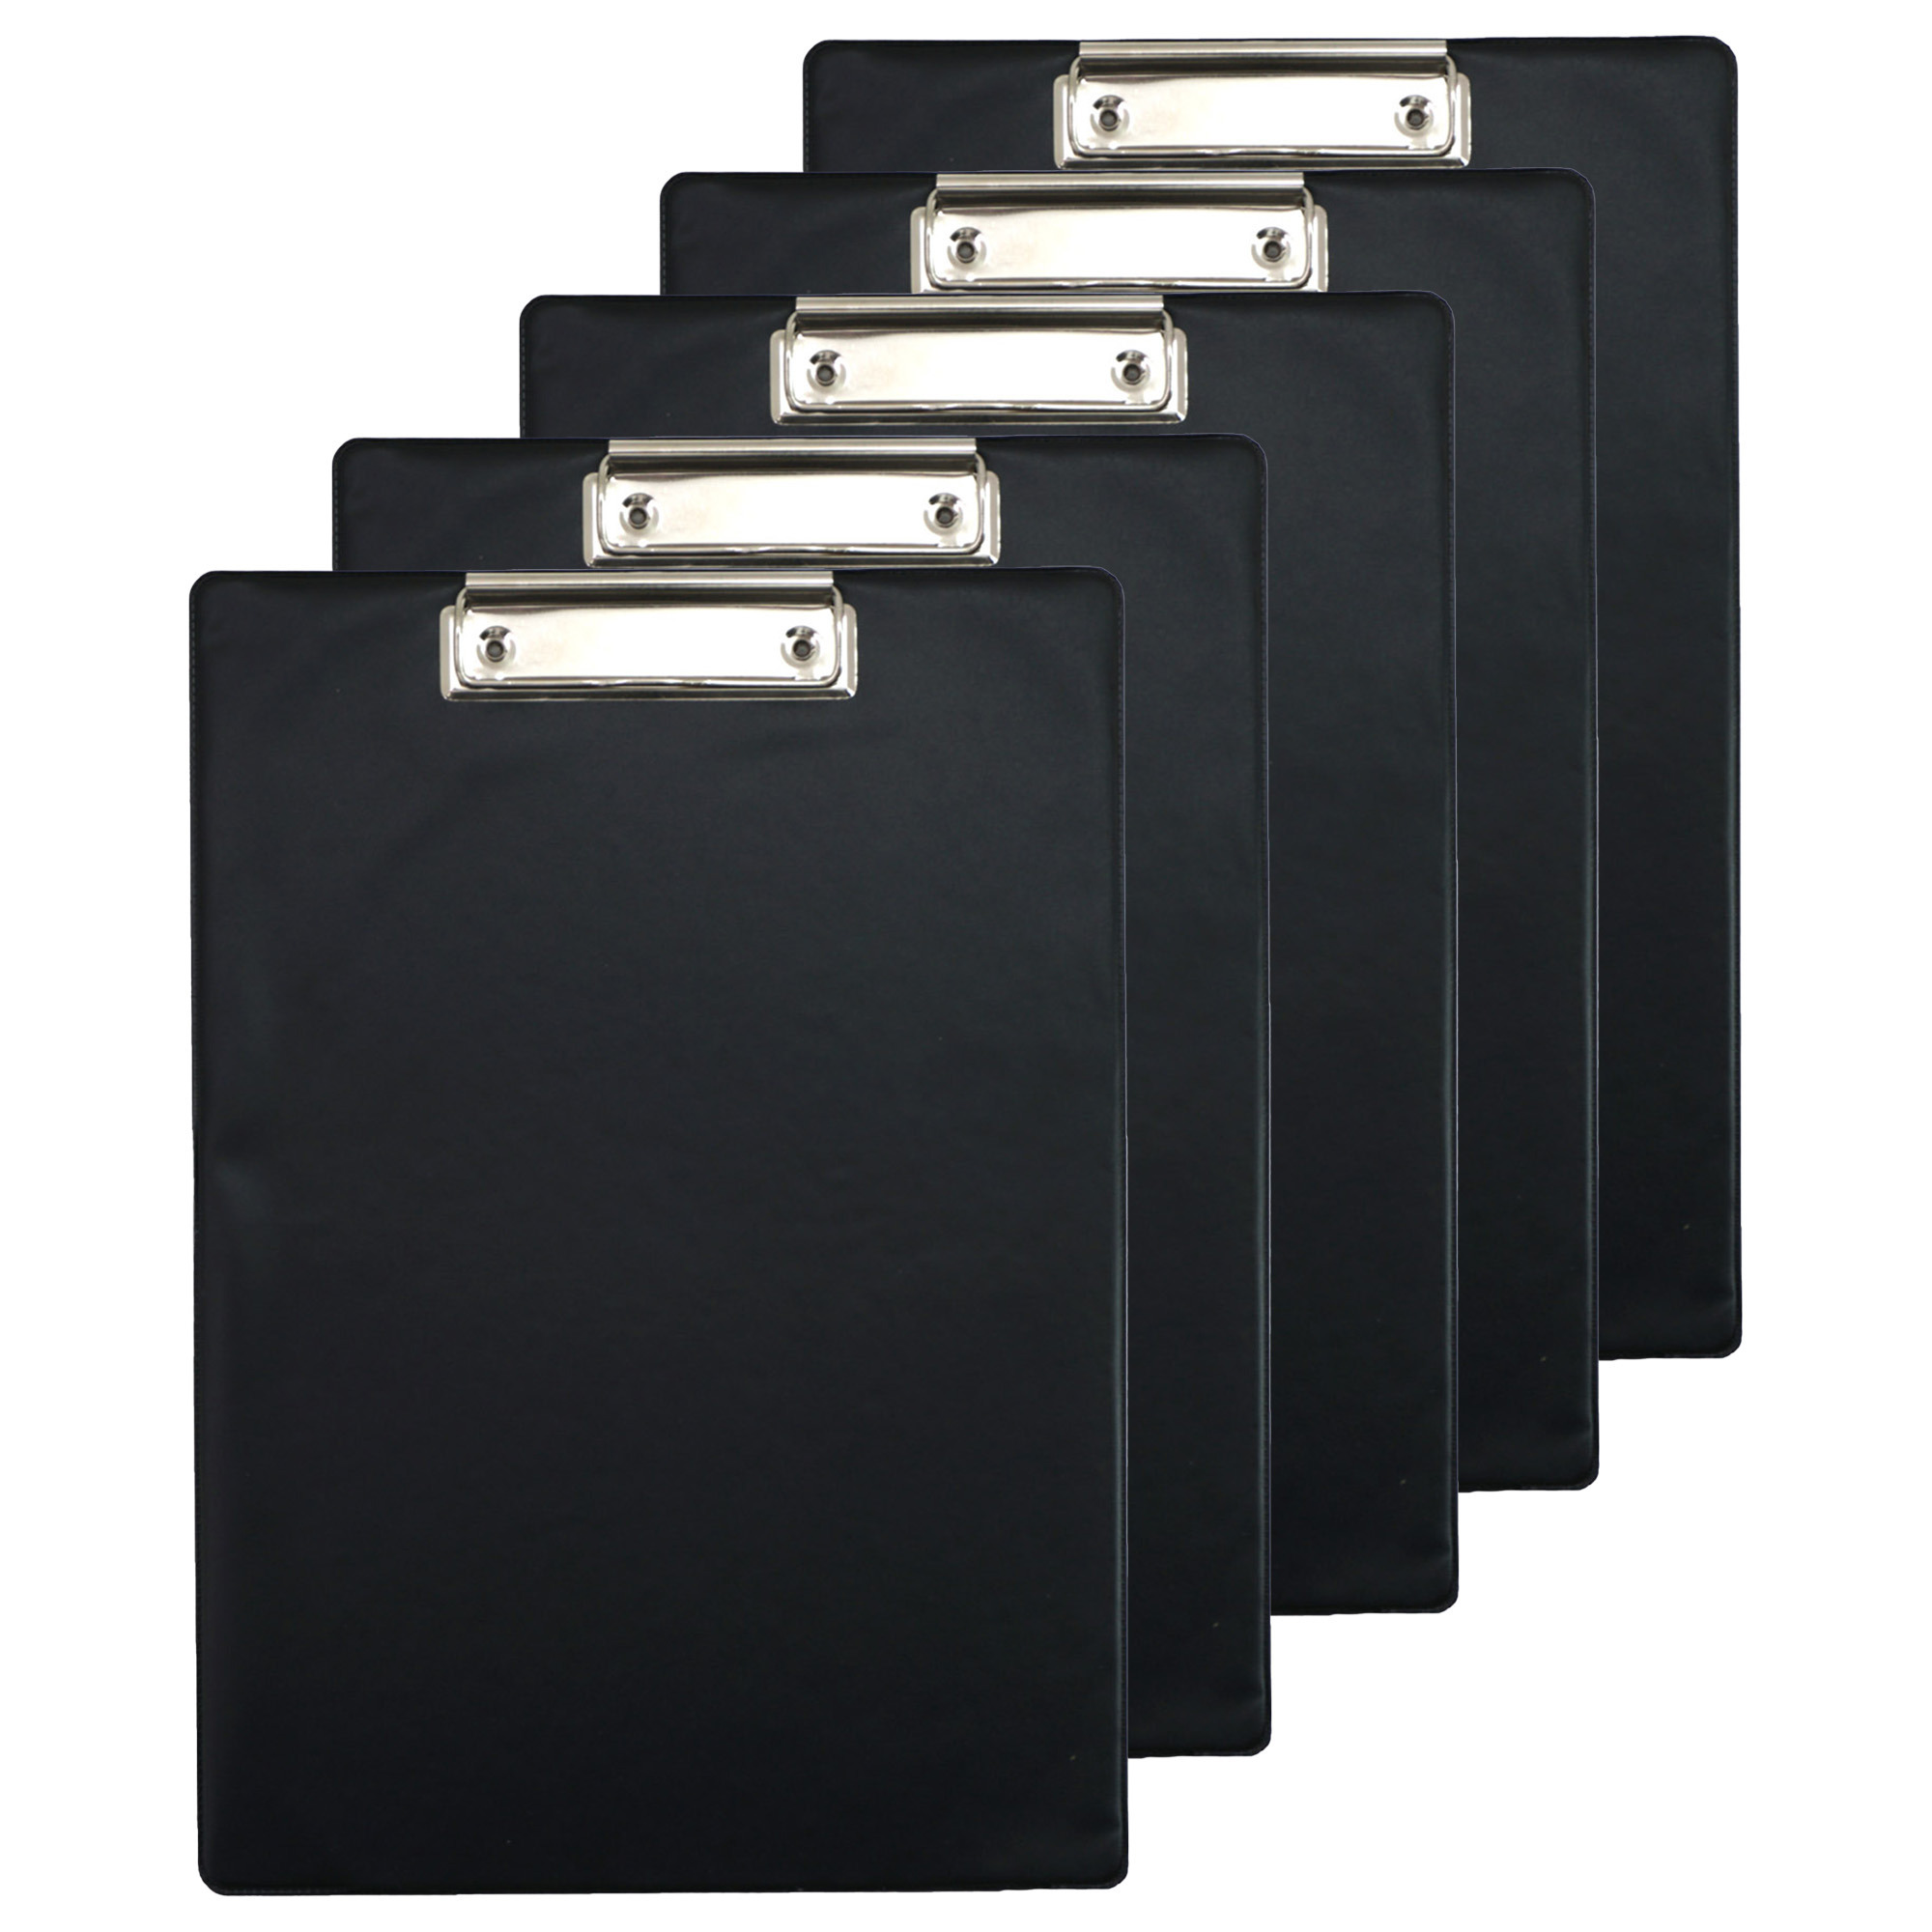 Clipboard-klembord-memobord voor documenten 10x zwart A4 formaat kunststof